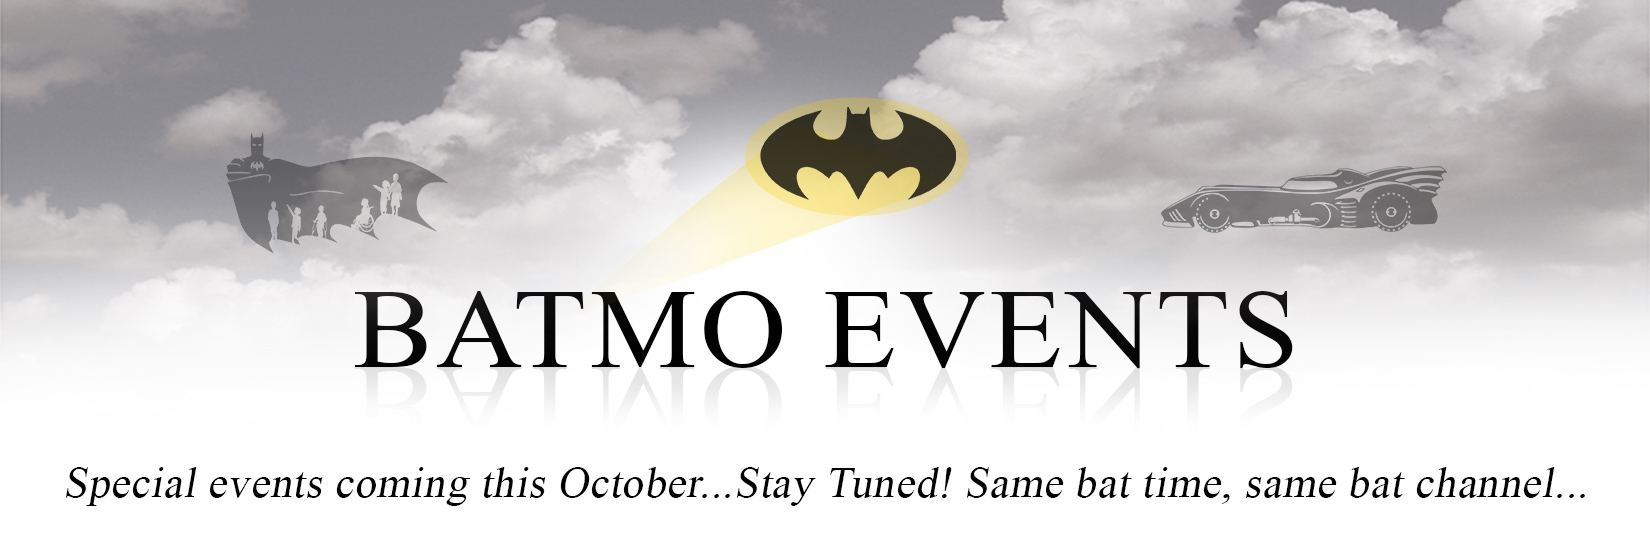 Batmo Events